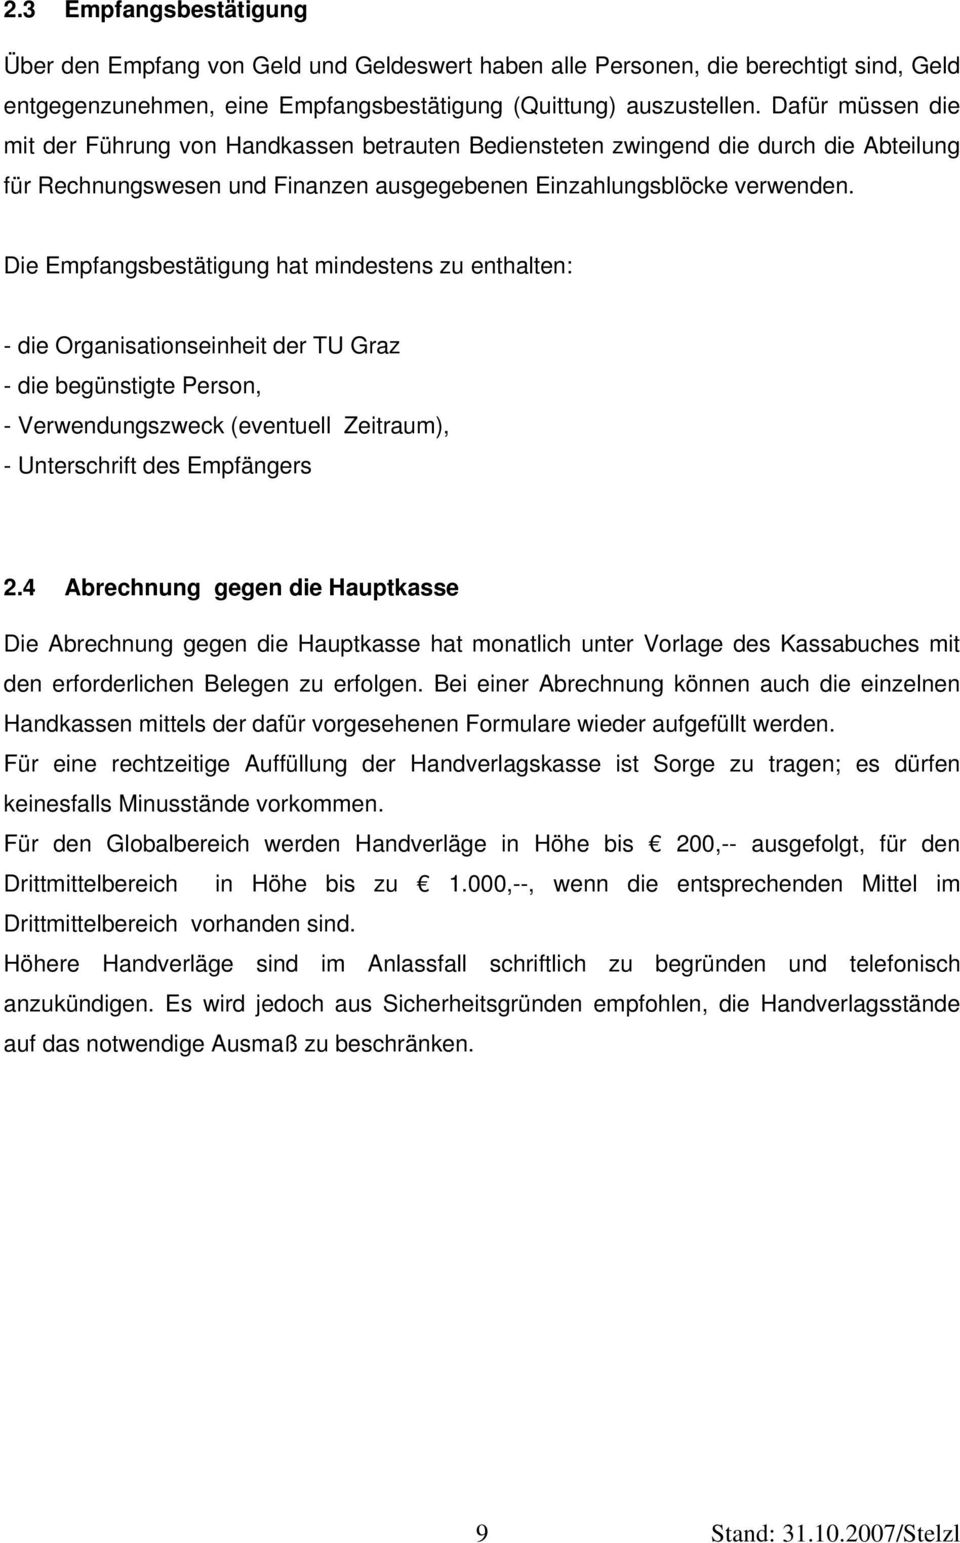 Die Empfangsbestätigung hat mindestens zu enthalten: - die Organisationseinheit der TU Graz - die begünstigte Person, - Verwendungszweck (eventuell Zeitraum), - Unterschrift des Empfängers 2.